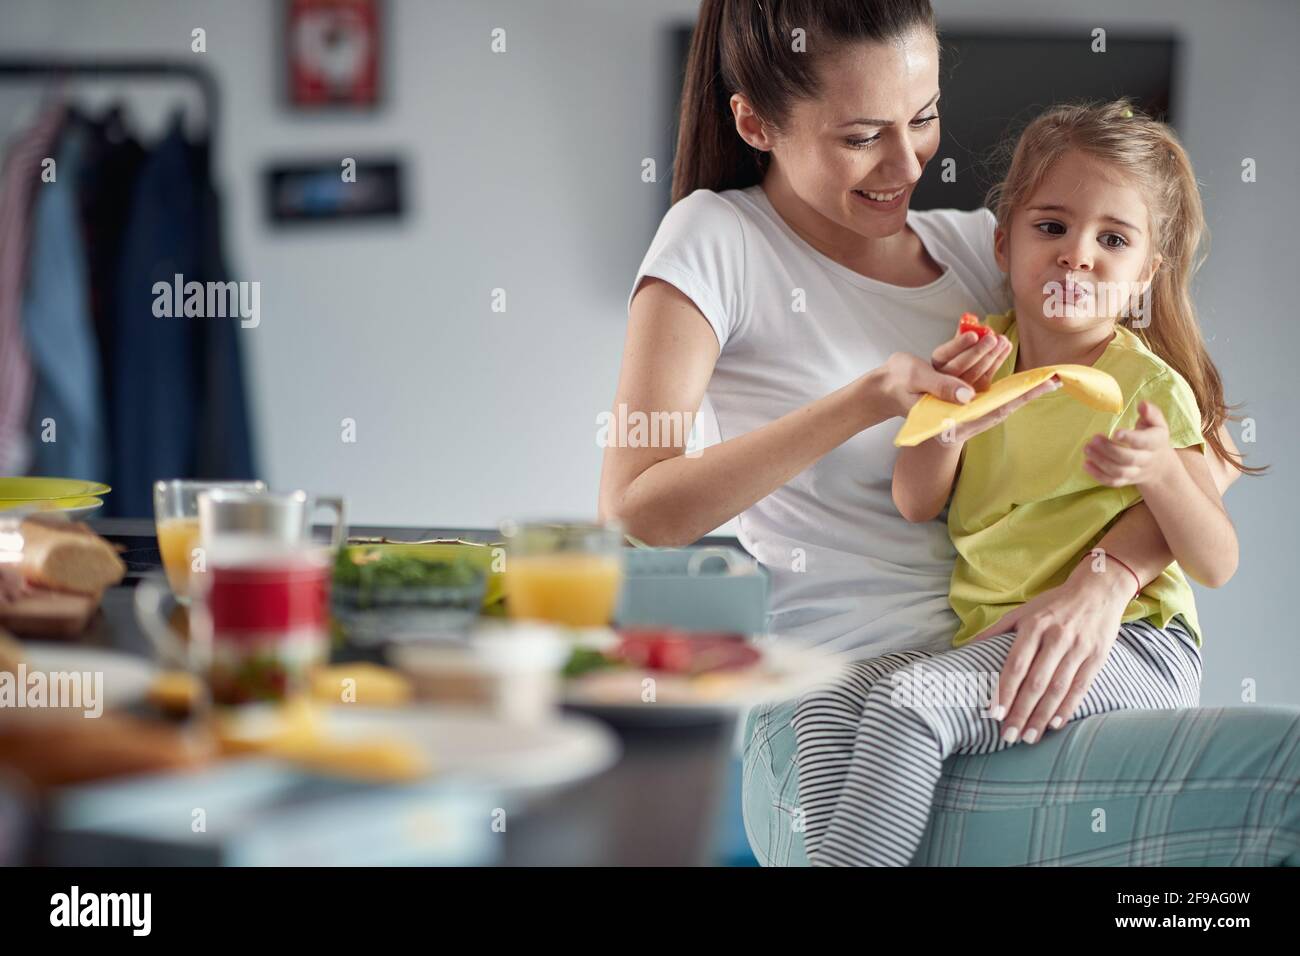 Ein kleines Mädchen genießt ein Frühstück in entspannter Atmosphäre zu Hause, während sie auf dem Schoß der Mutter sitzt. Familie, Frühstück, zusammen, Zuhause Stockfoto